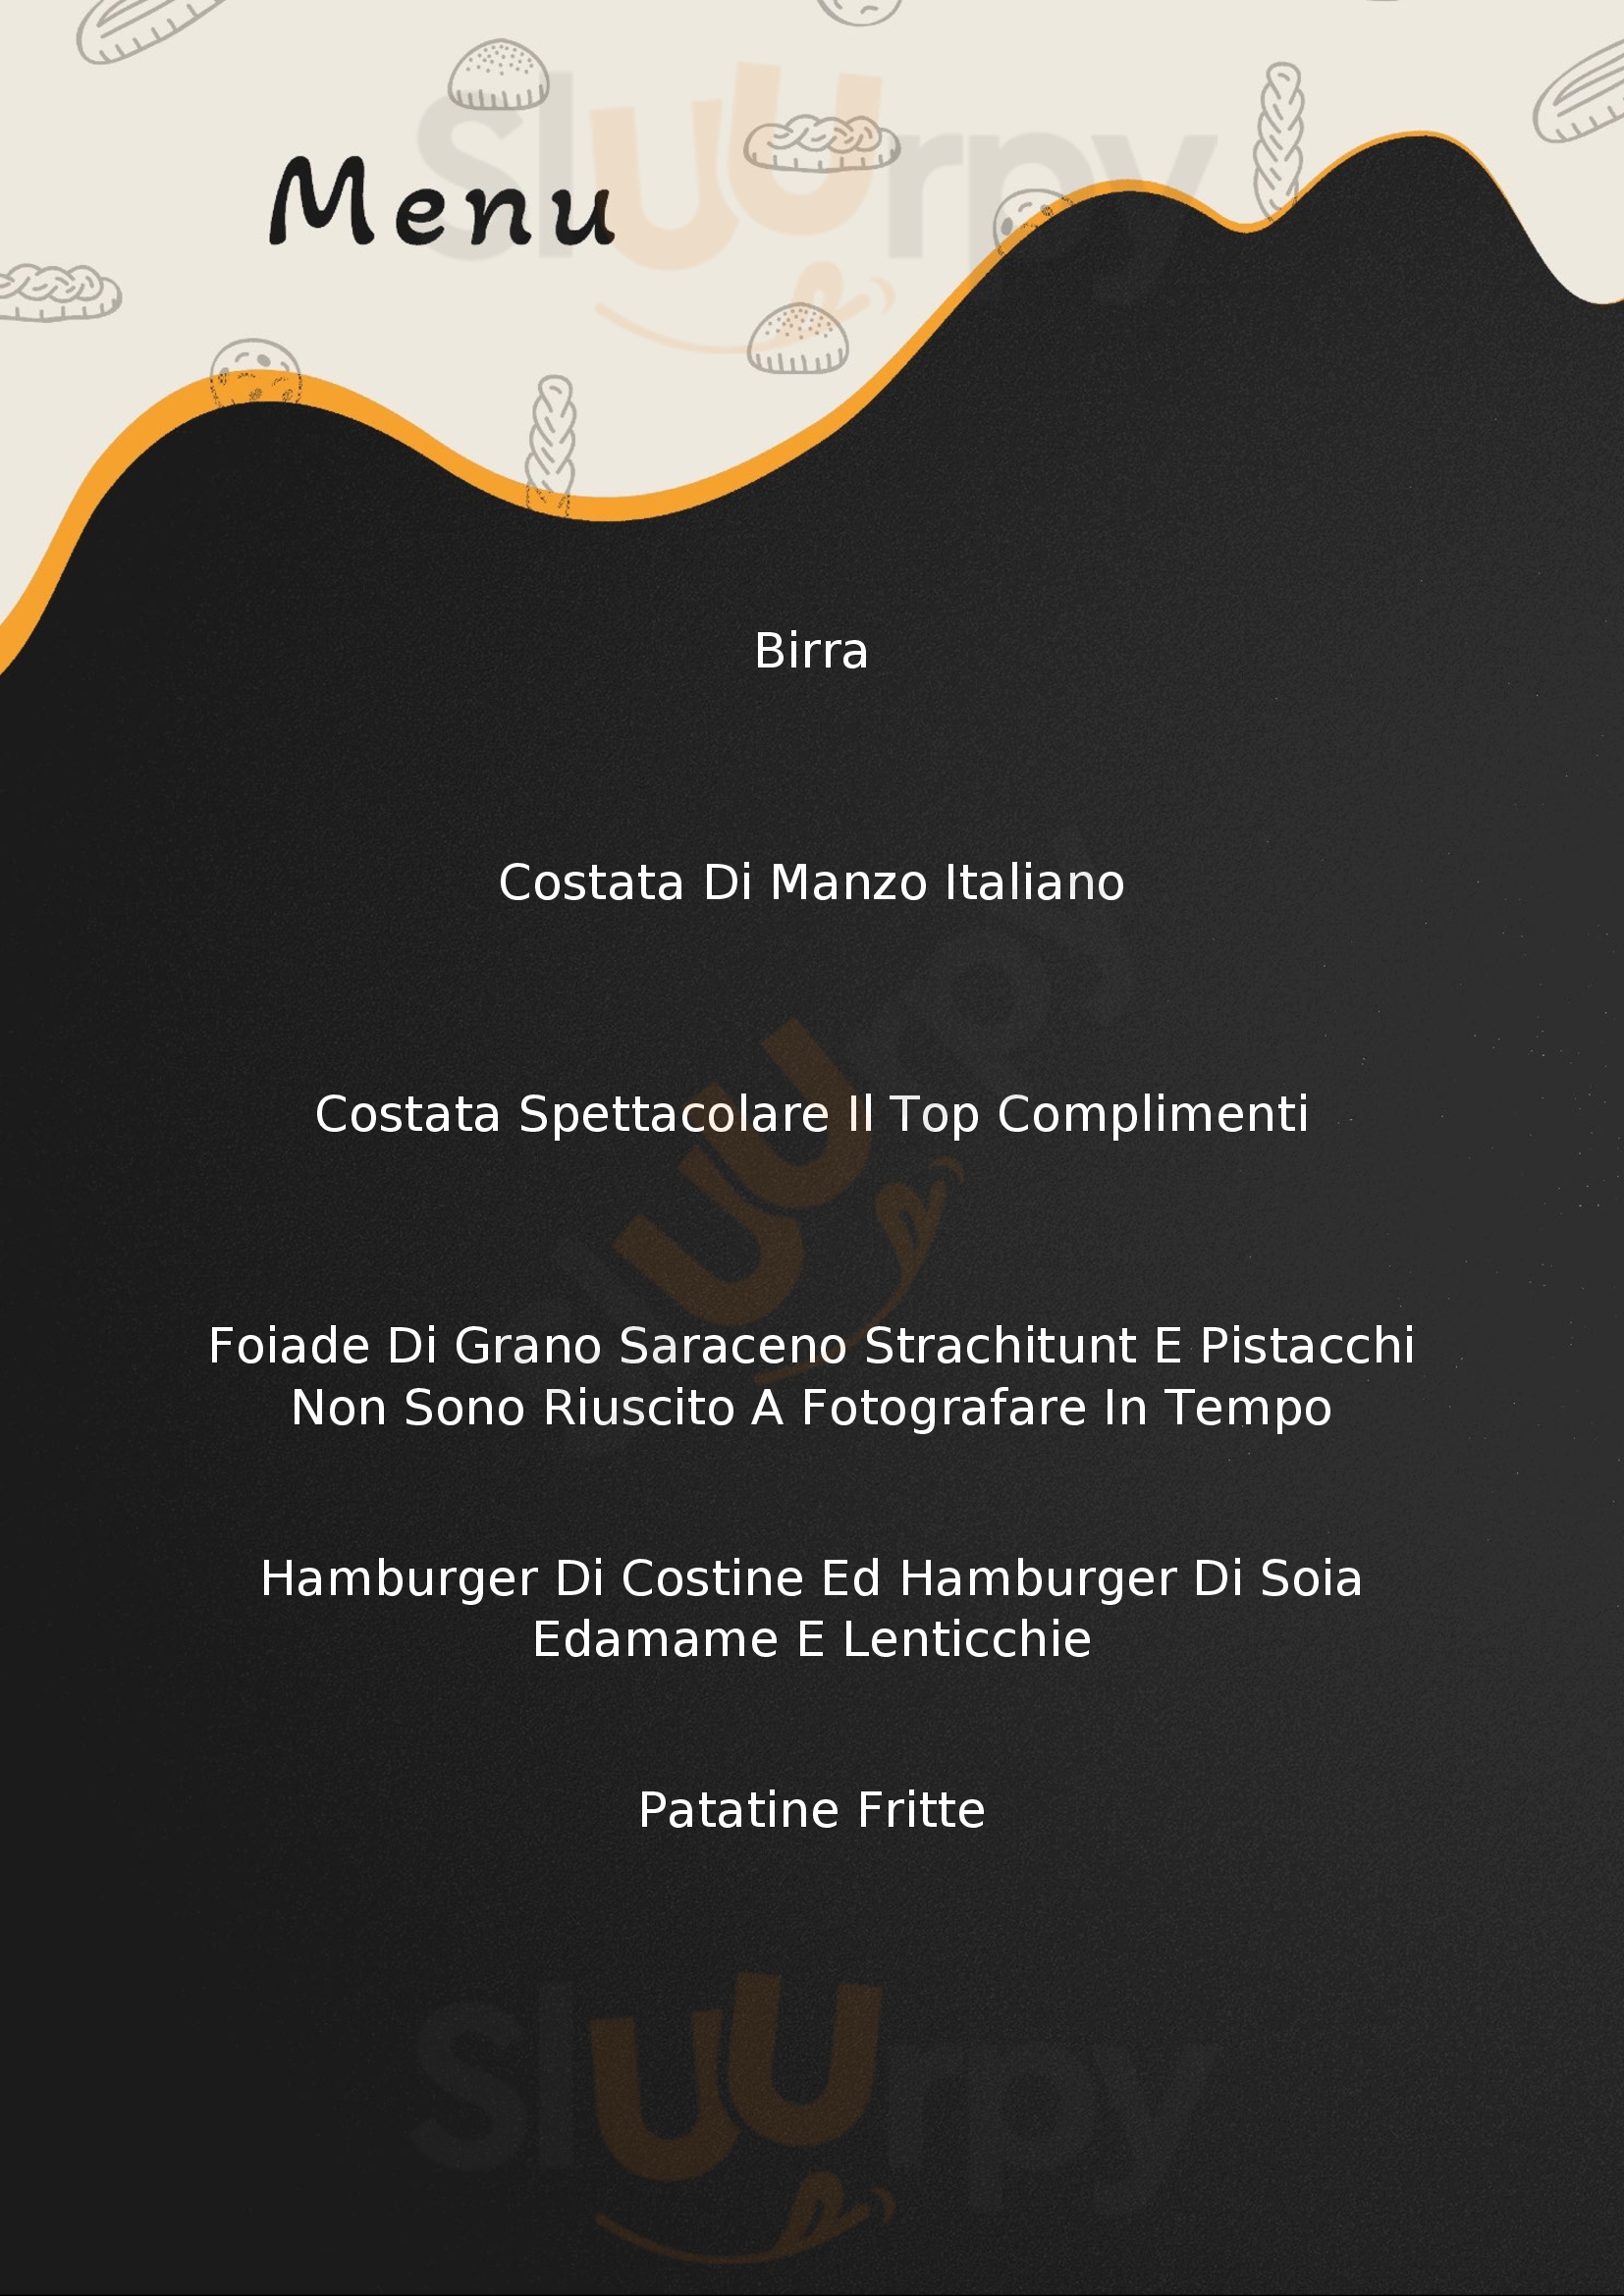 33 Italian Street Food Castione della Presolana menù 1 pagina